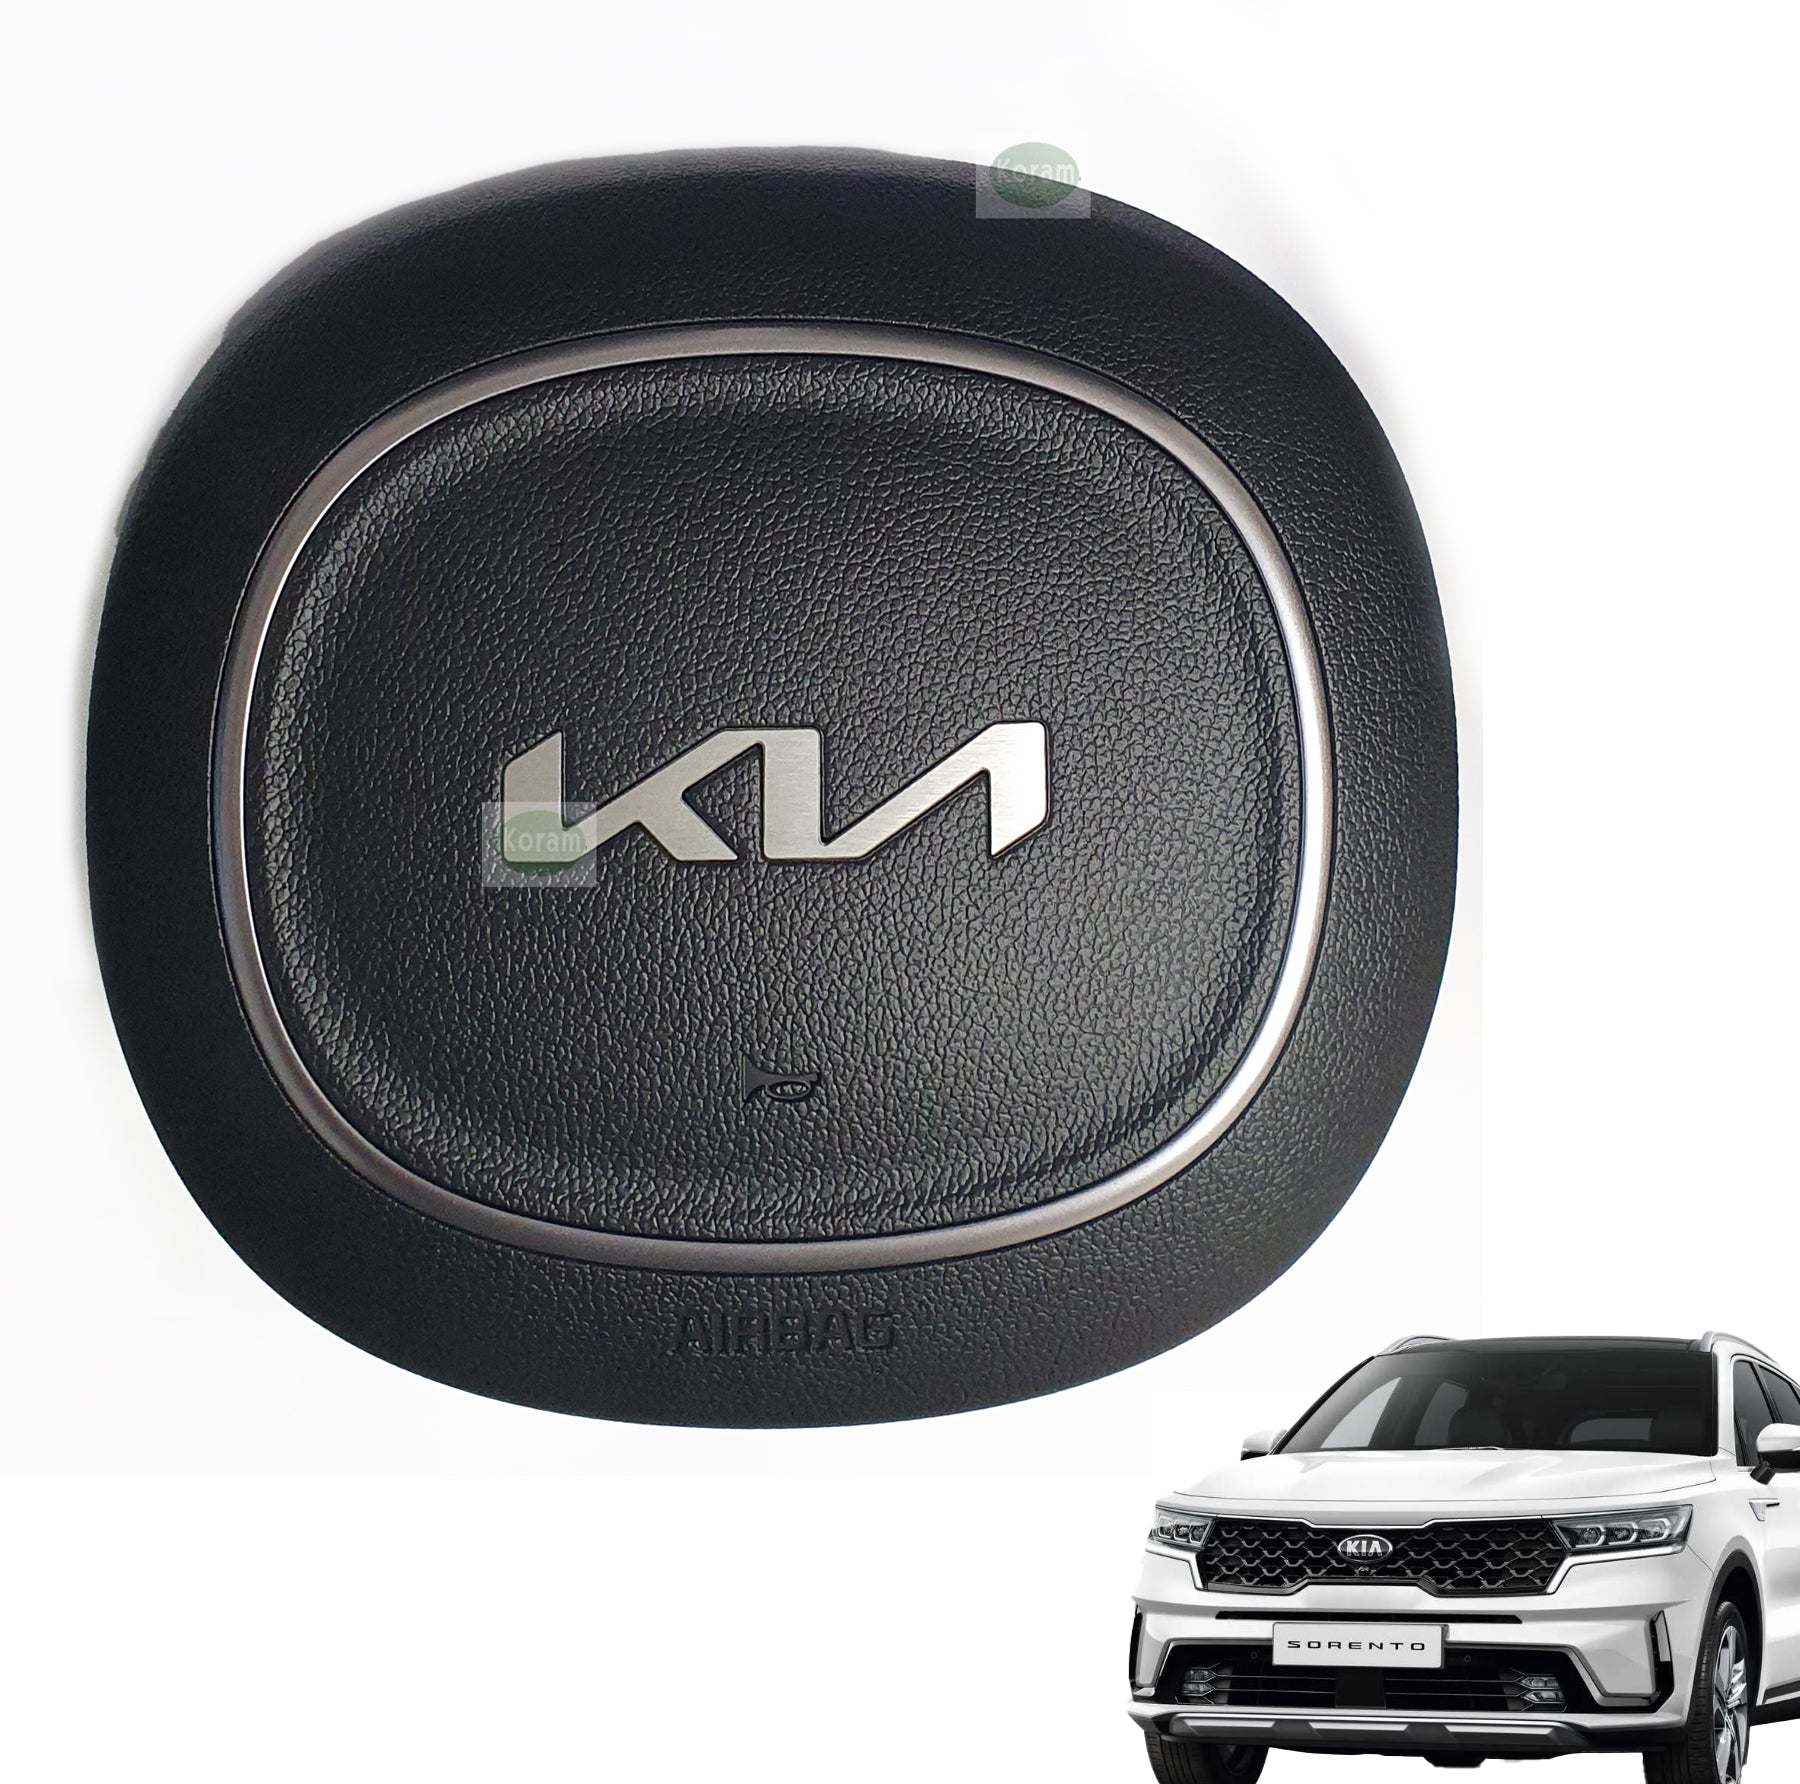 2022- 2023 Kia Sorento steering wheel AirBag  , 80100-P2600WK OEM Brand new KIA logo